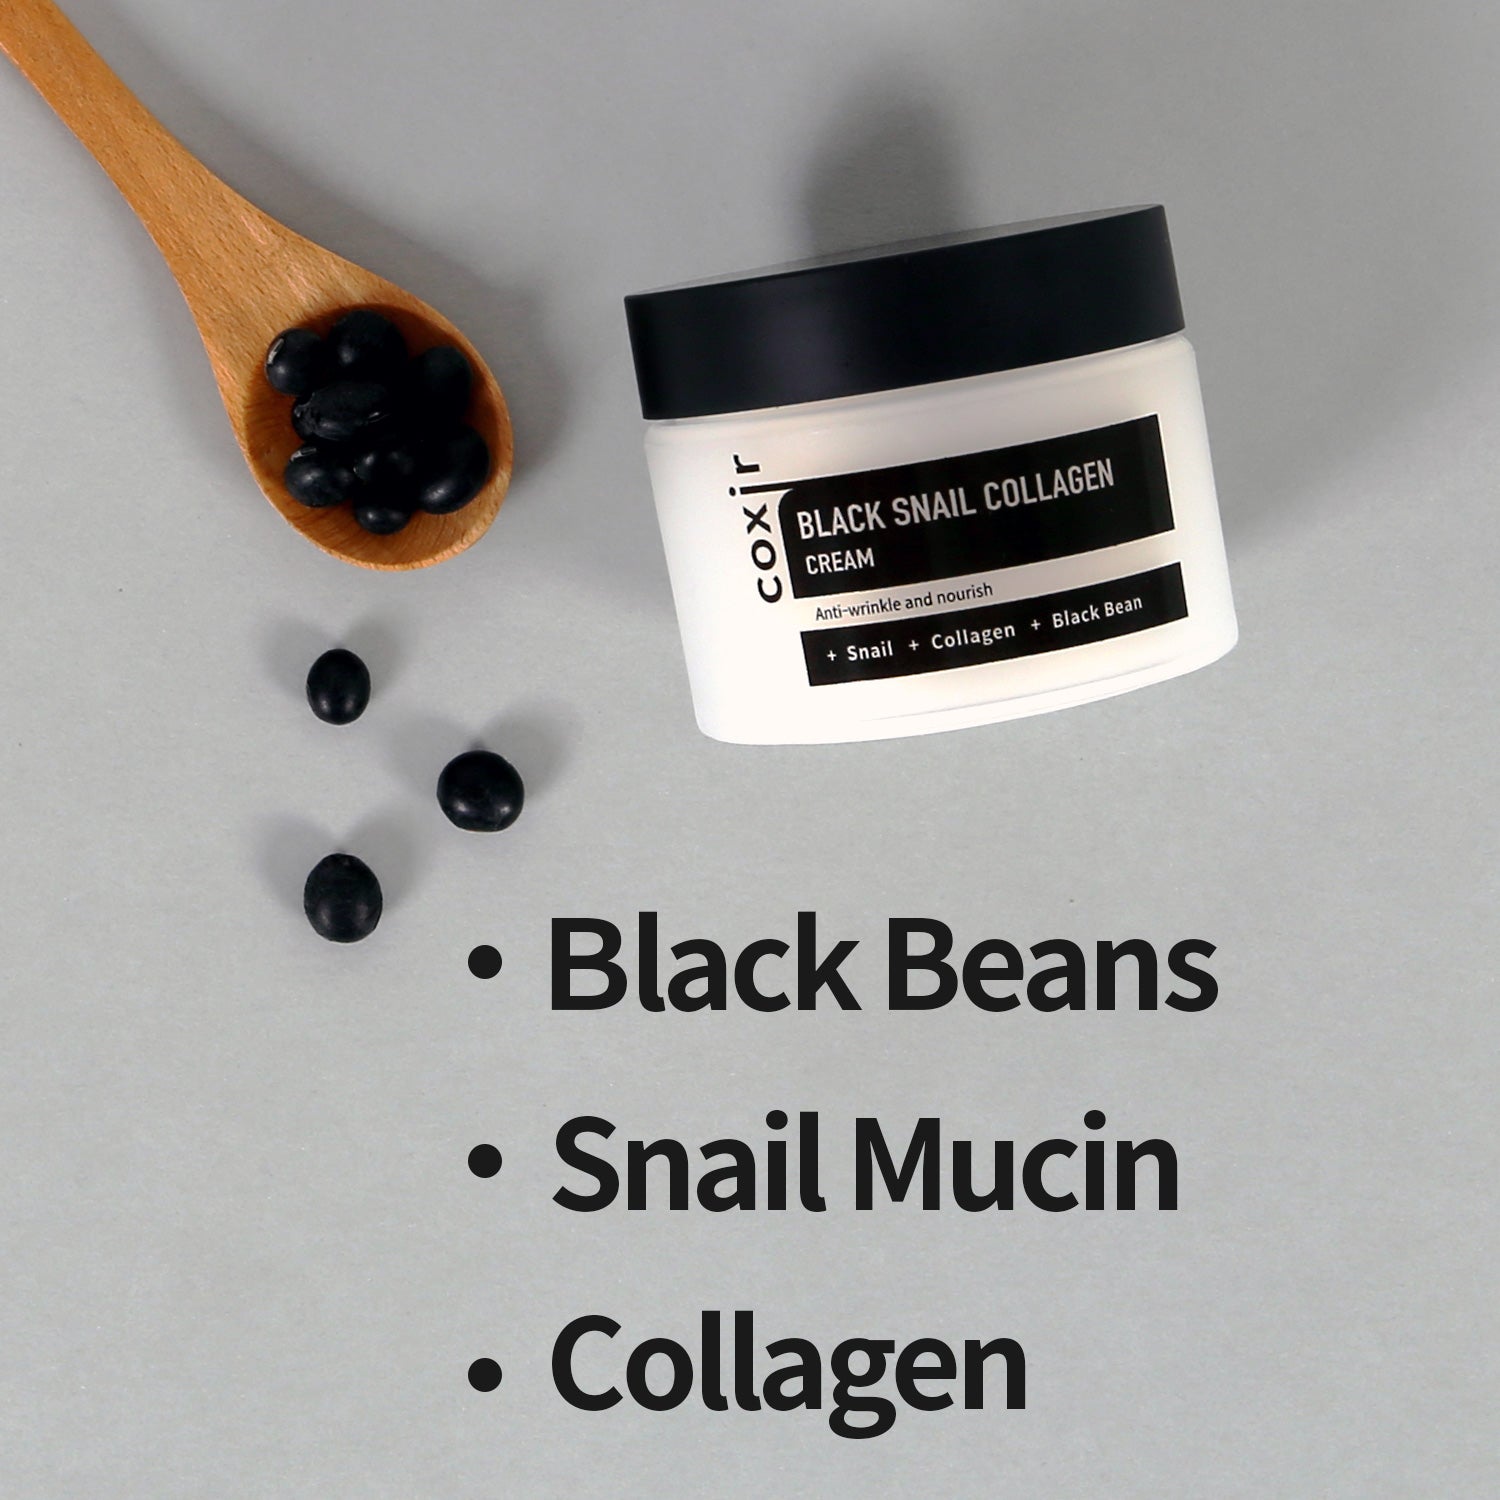 Black Snail Collagen Cream